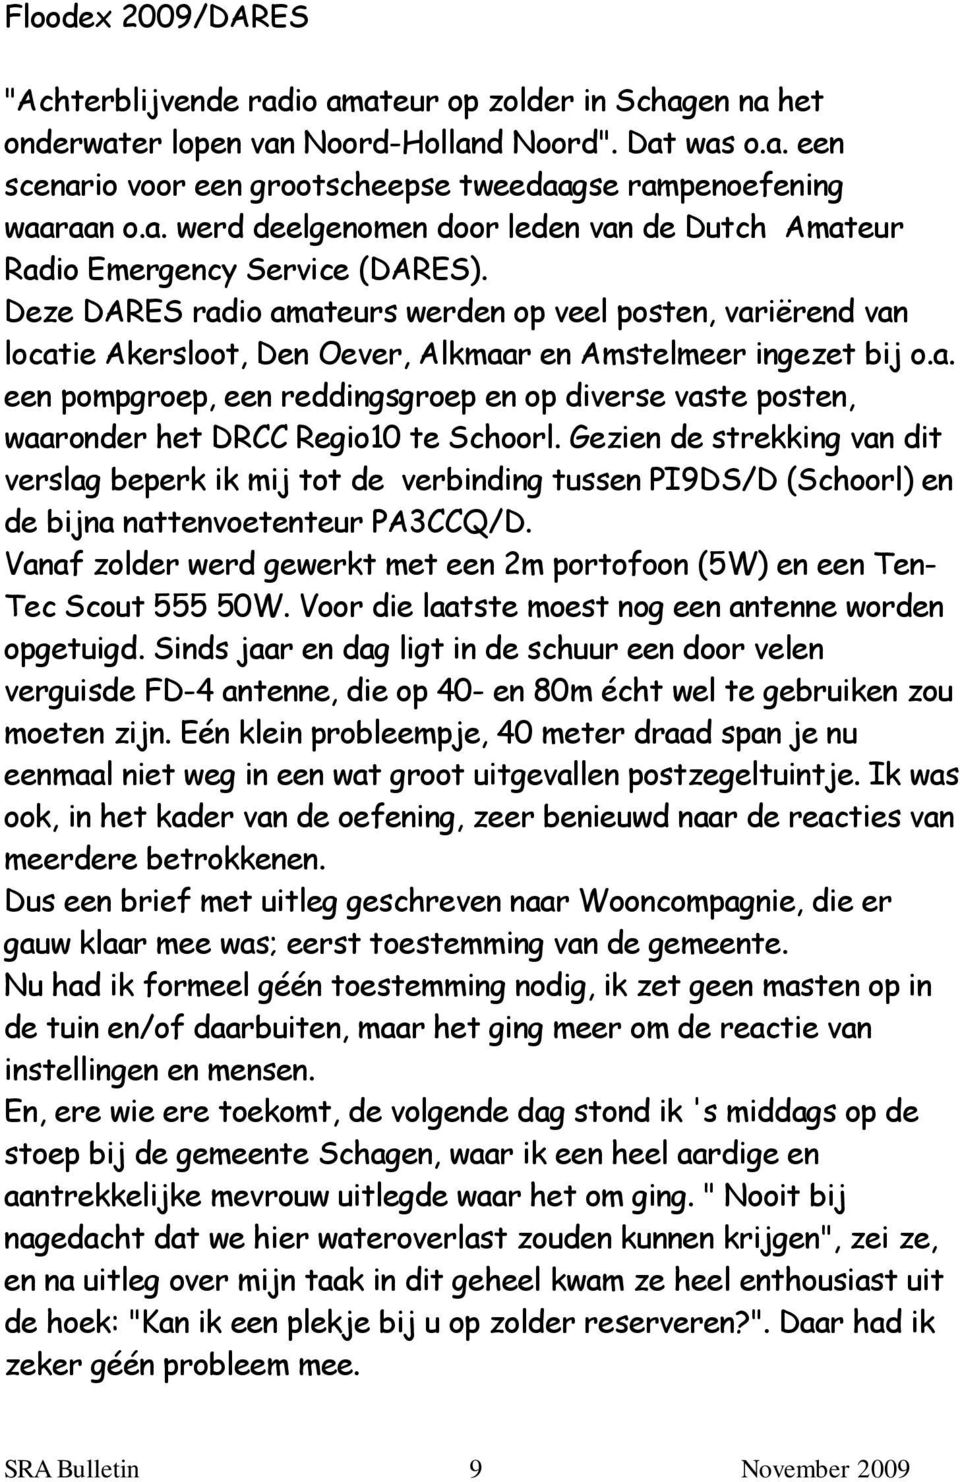 Deze DARES radio amateurs werden op veel posten, variërend van locatie Akersloot, Den Oever, Alkmaar en Amstelmeer ingezet bij o.a. een pompgroep, een reddingsgroep en op diverse vaste posten, waaronder het DRCC Regio10 te Schoorl.